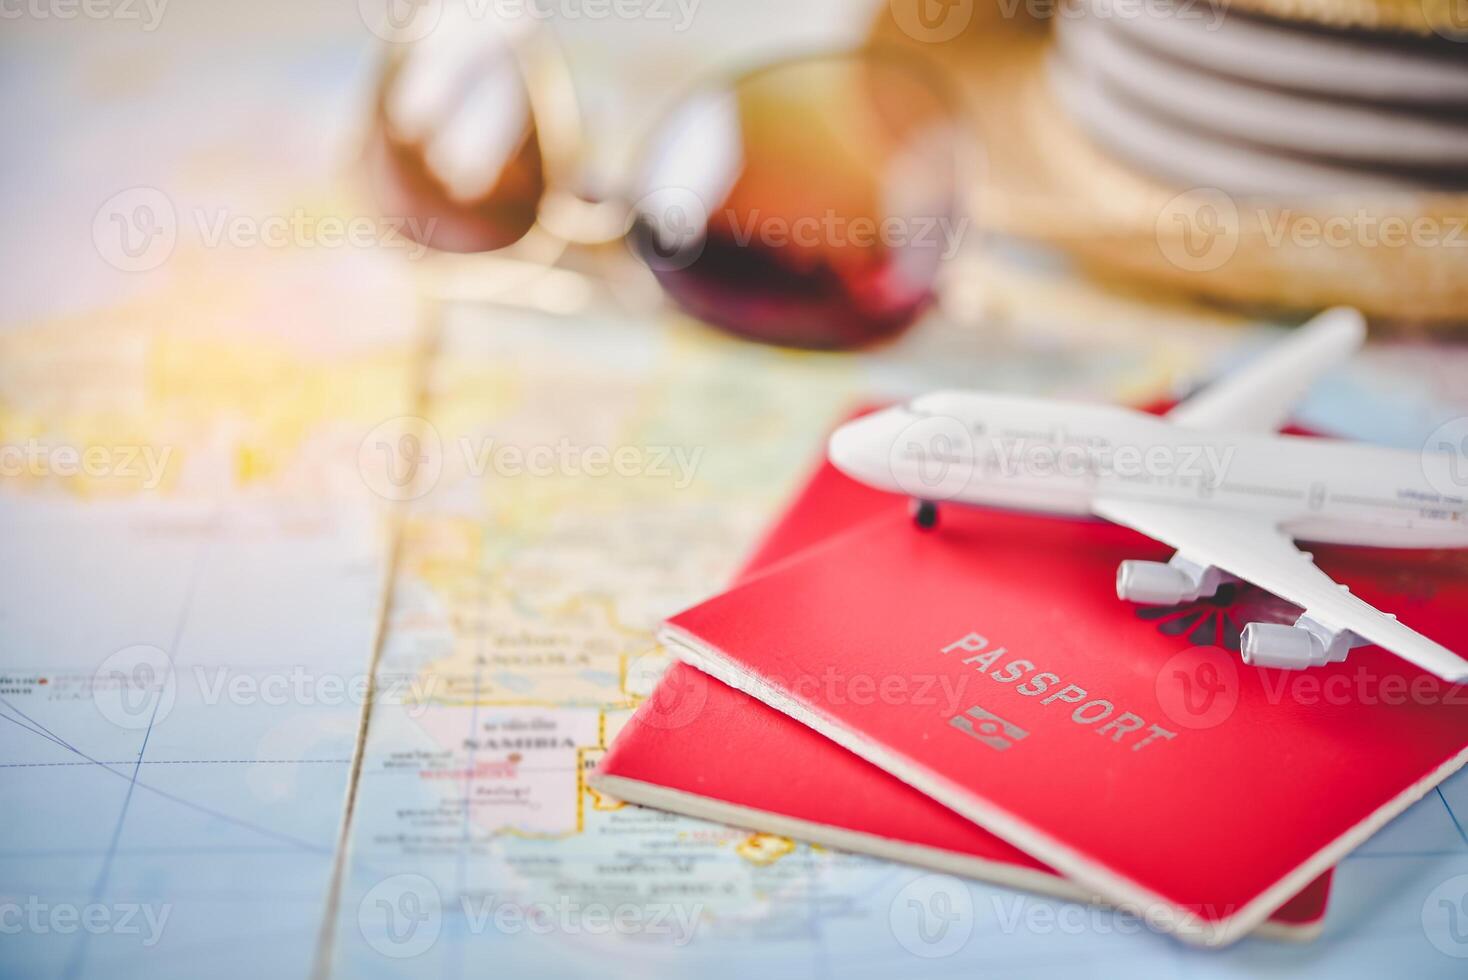 pasaporte metido en el mapa concepto turismo planificación y equipo necesario para el viaje foto